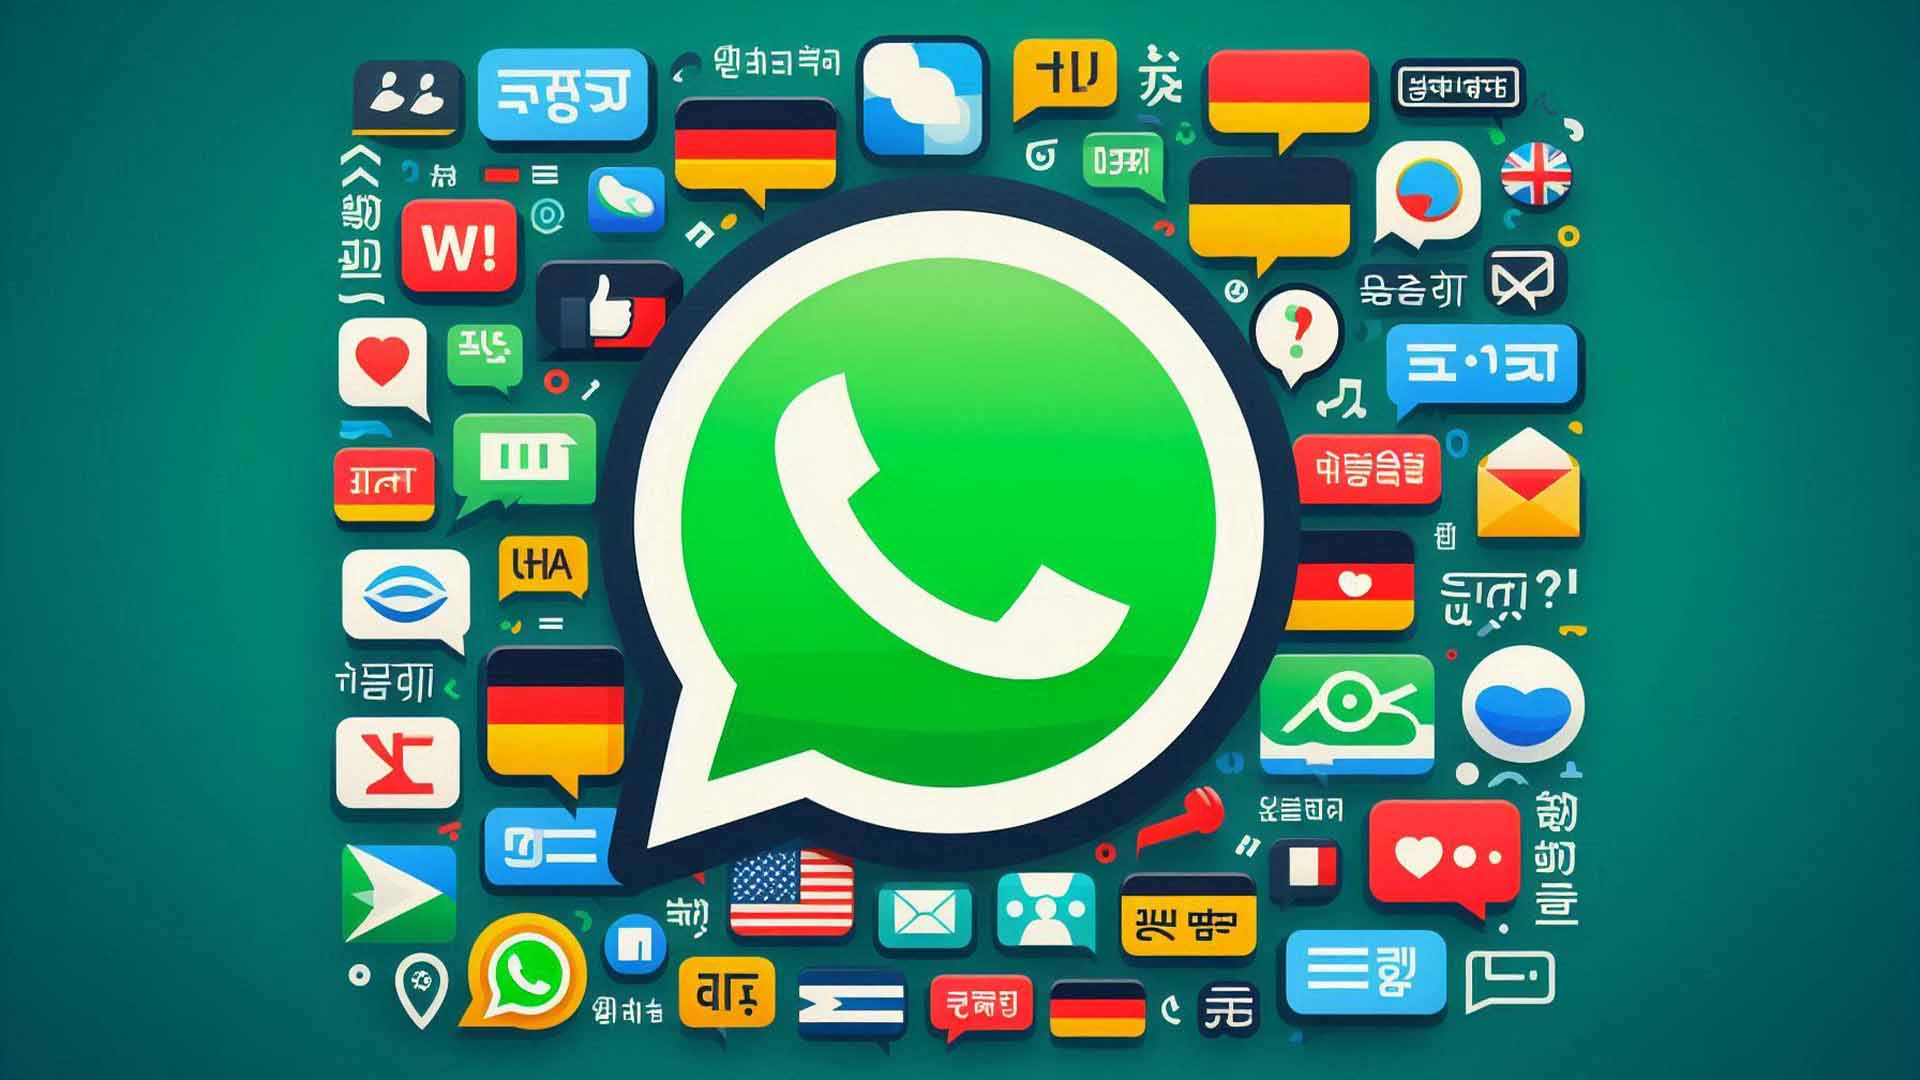 WhatsApp sohbetlerine canlı çeviri özelliği geliyor!